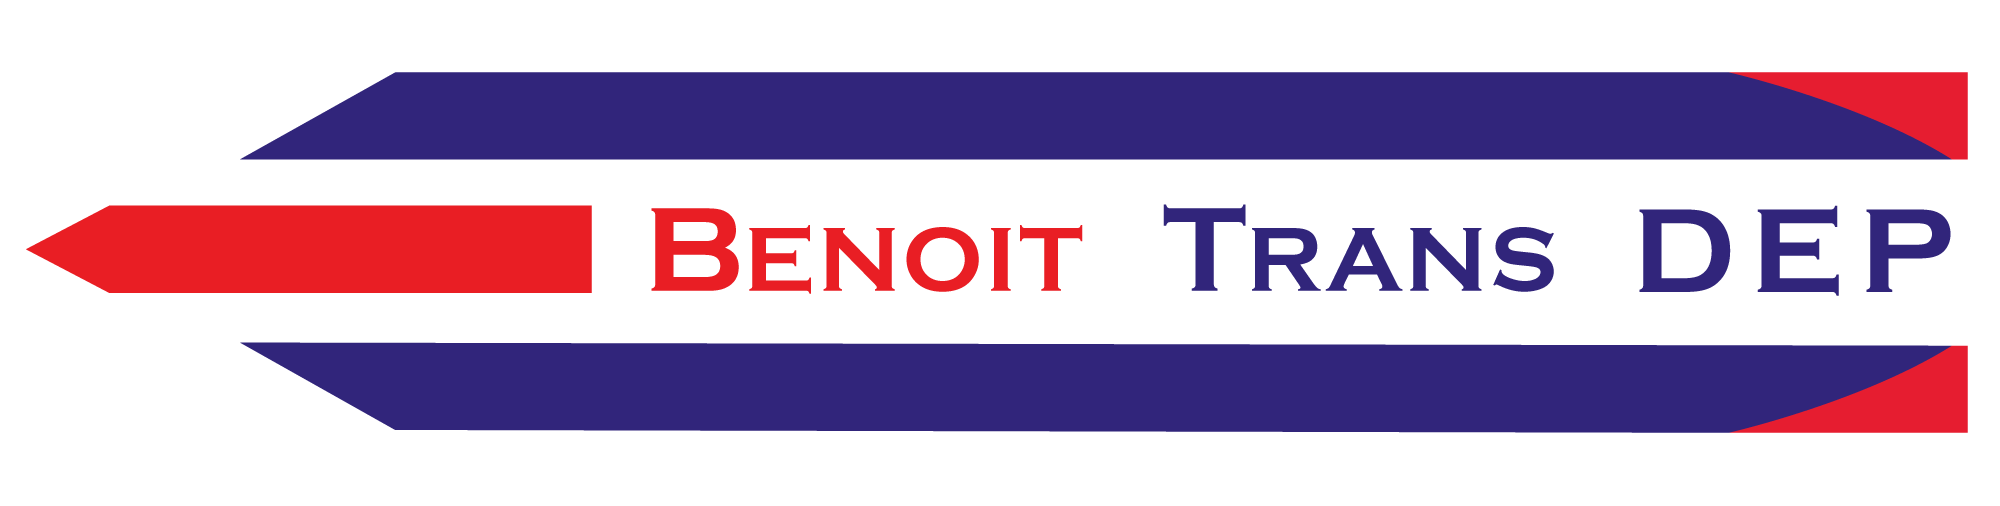 logo Benoit trans DEP